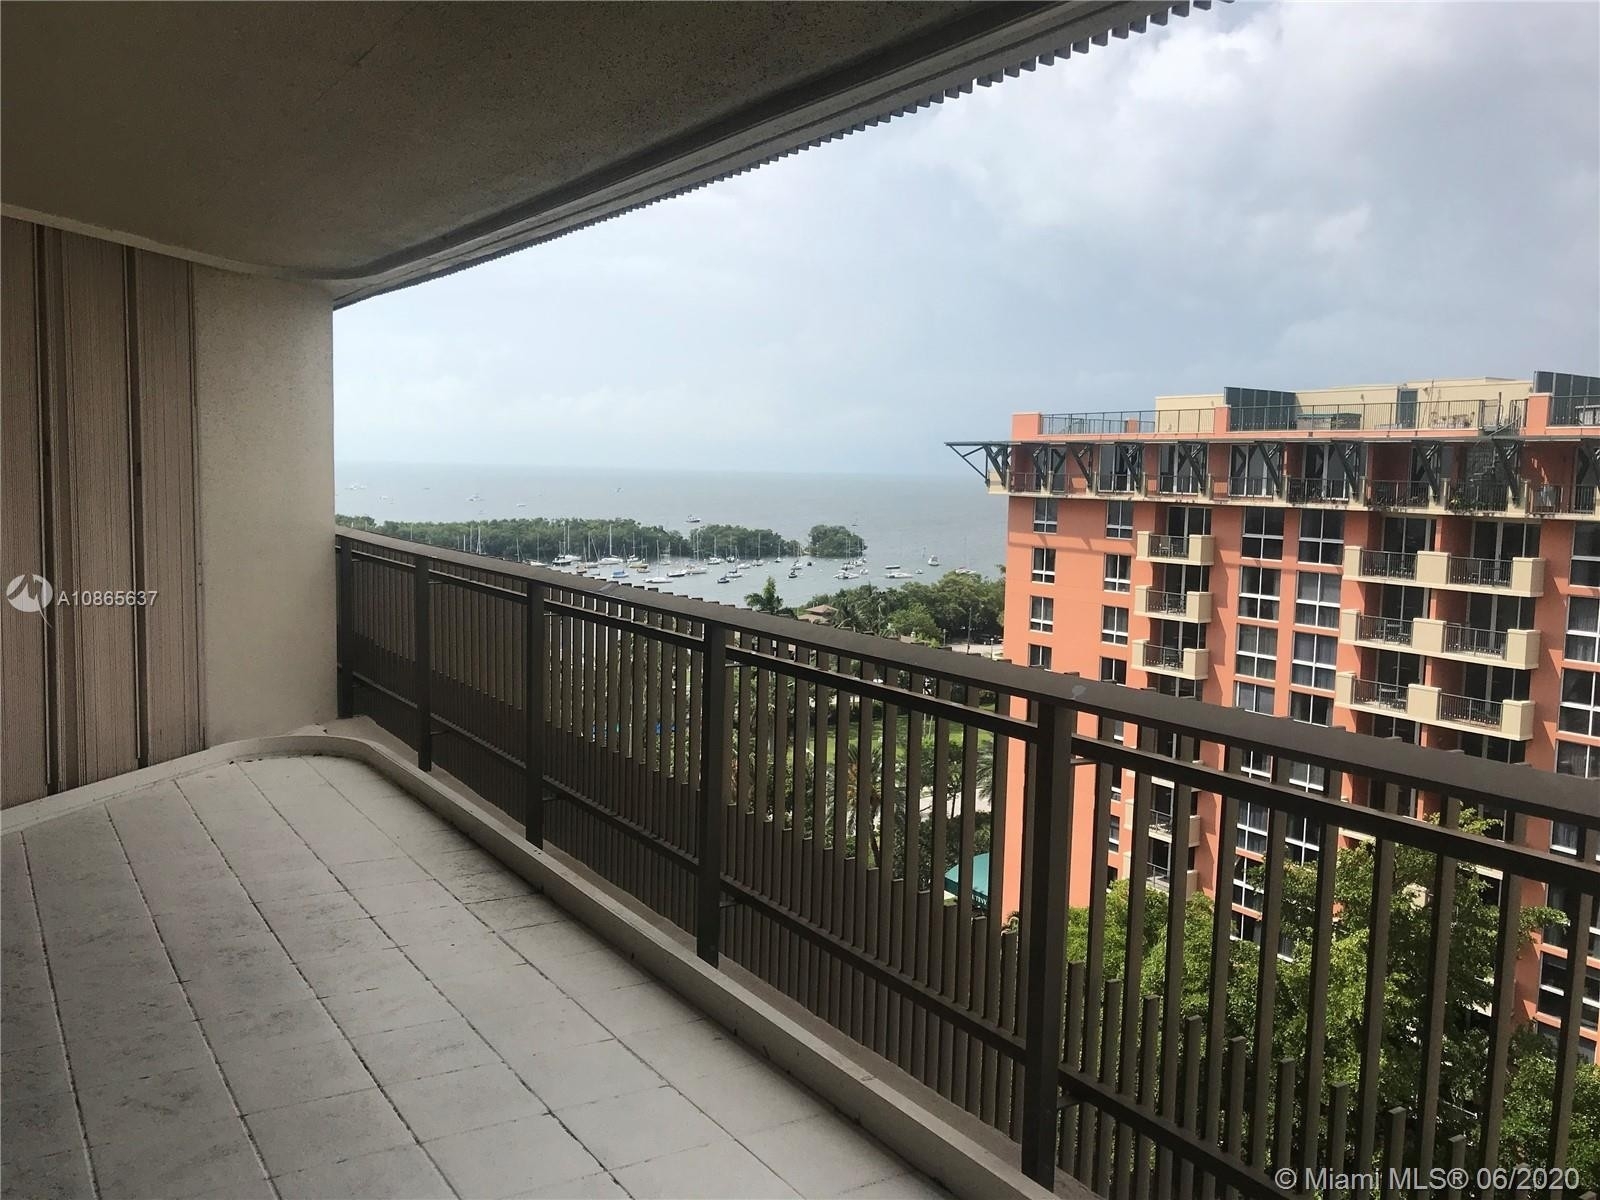 16. Condominiums at 2901 S Bayshore Dr, 11F Miami